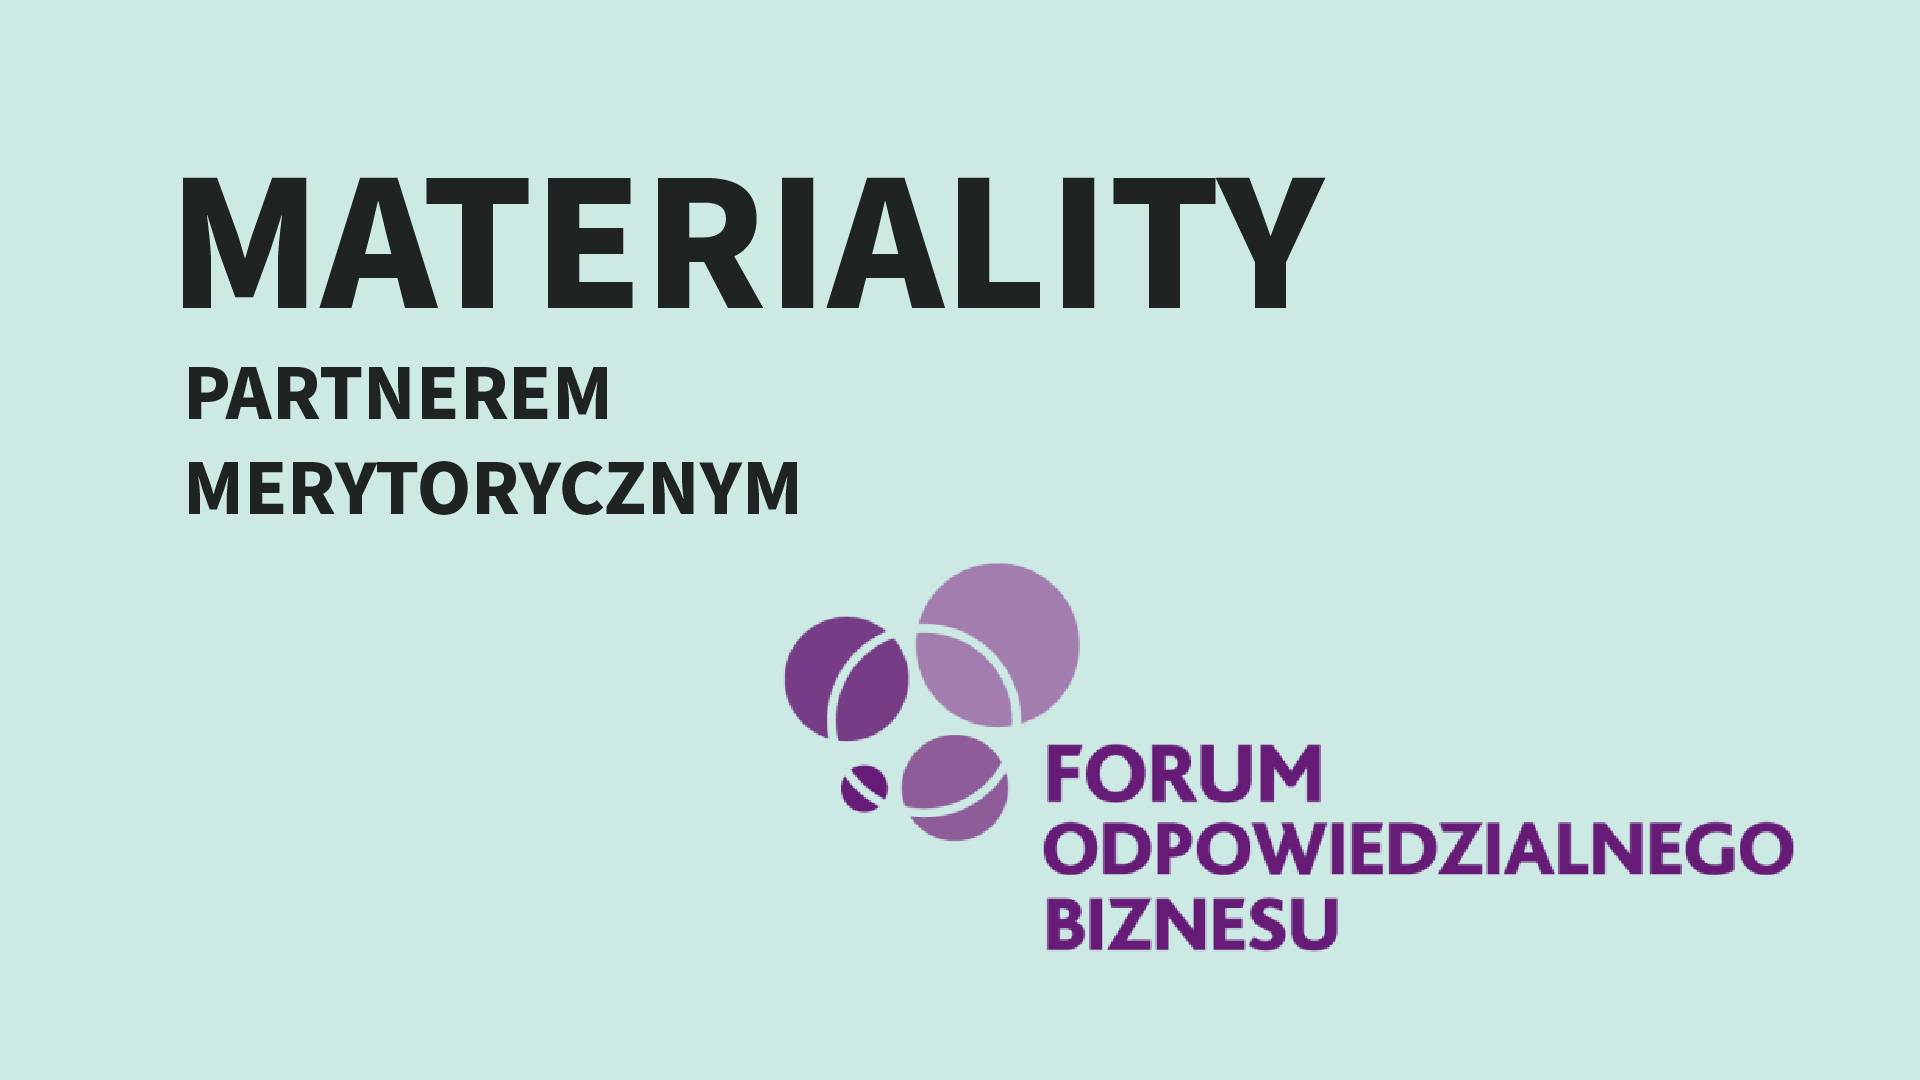 Materiality partnerem merytorycznym Forum Odpowiedzialnego Biznesu